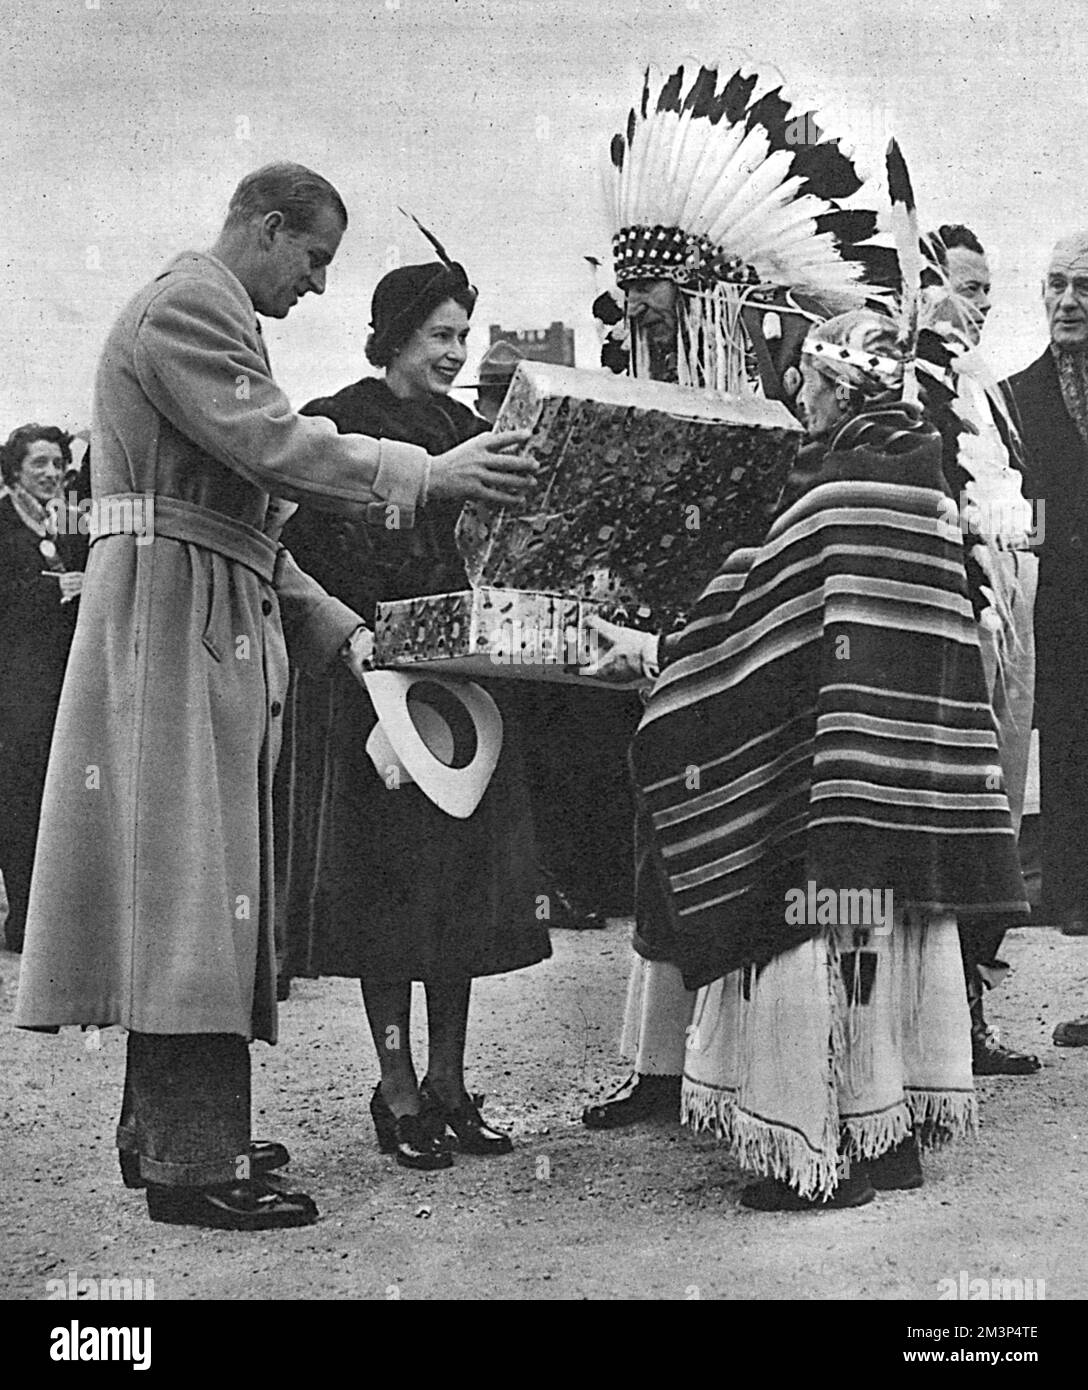 À Winnipeg, lors de la tournée royale du Canada, la princesse Elizabeth et le prince Philip reçoivent un cadeau pour la princesse Anne. Le cadeau est un petit costume amérindien, fait par Mme Antoinette HeavyShield, vu ici le présenter au nom de toutes les mères des cinq peuples amérindiens du sud de l'Alberta. Au centre se trouve le chef Percy Creighton, qui agit comme interprète. Date : octobre 1951 Banque D'Images